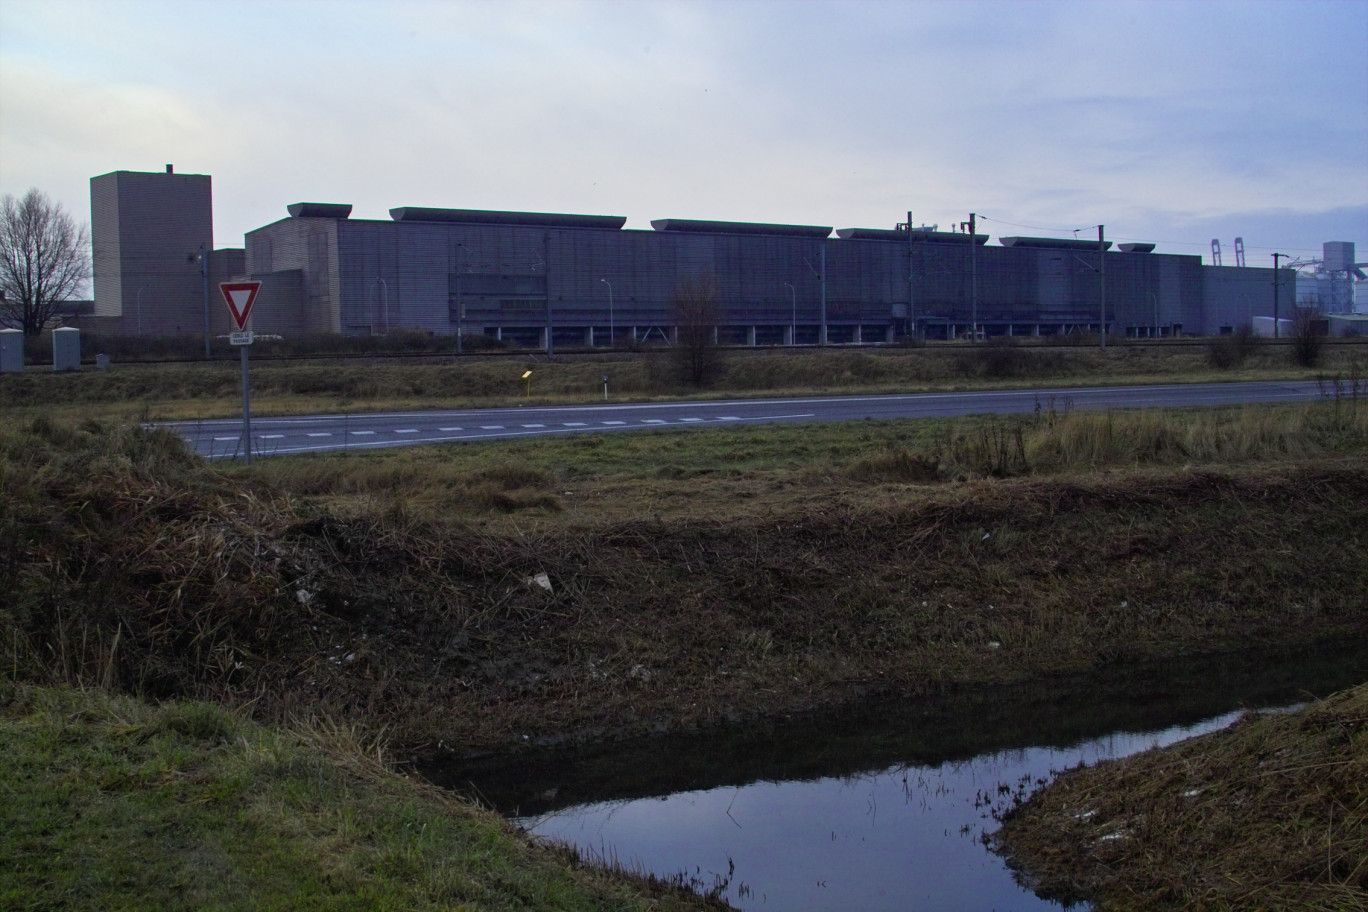 Fruit d’une décision prise en 19988, l’usine Aluminium Dunkerque (ex Péchiney) est implantée à l’entrée des Huttes entre Gravelines et Loon-Plage depuis 1992.


